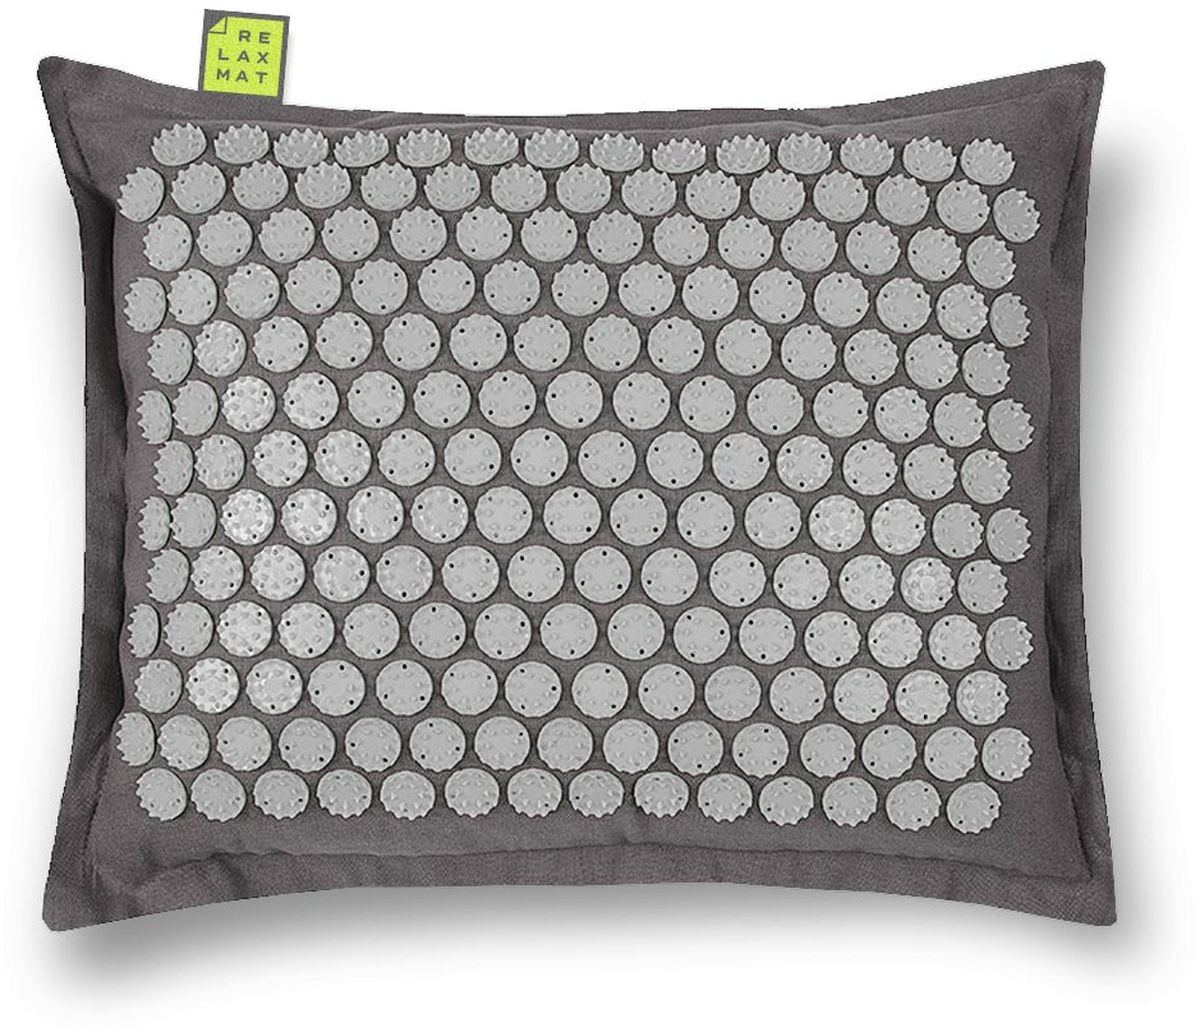 Relaxmat Массажная подушка, цвет: серый, графитовый